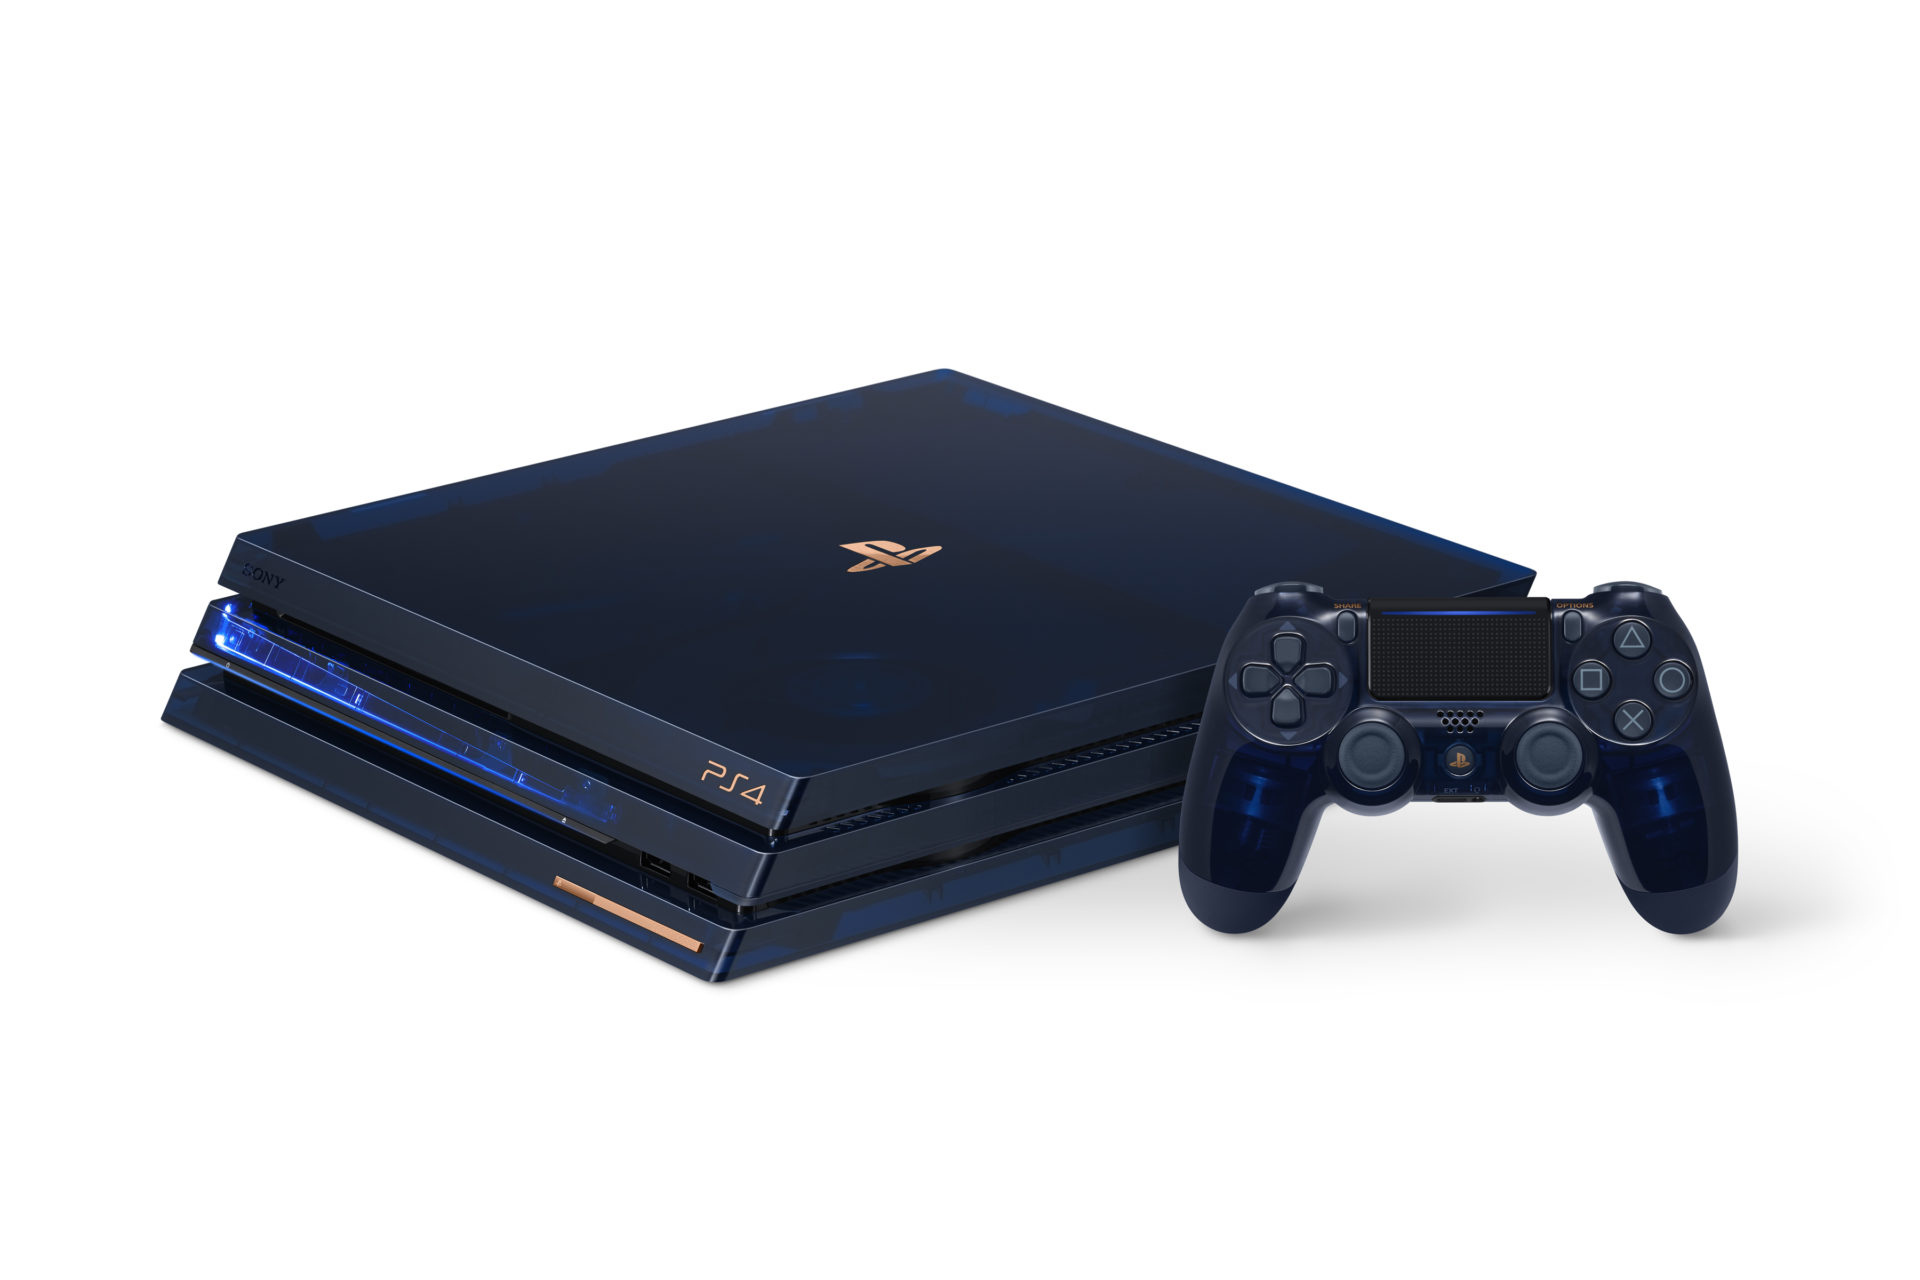 เปิดราคาไทย PlayStation 4 Pro รุ่น 500 Million Limited Edition ความจุ 2 TB ขาย 18,490 บาท!